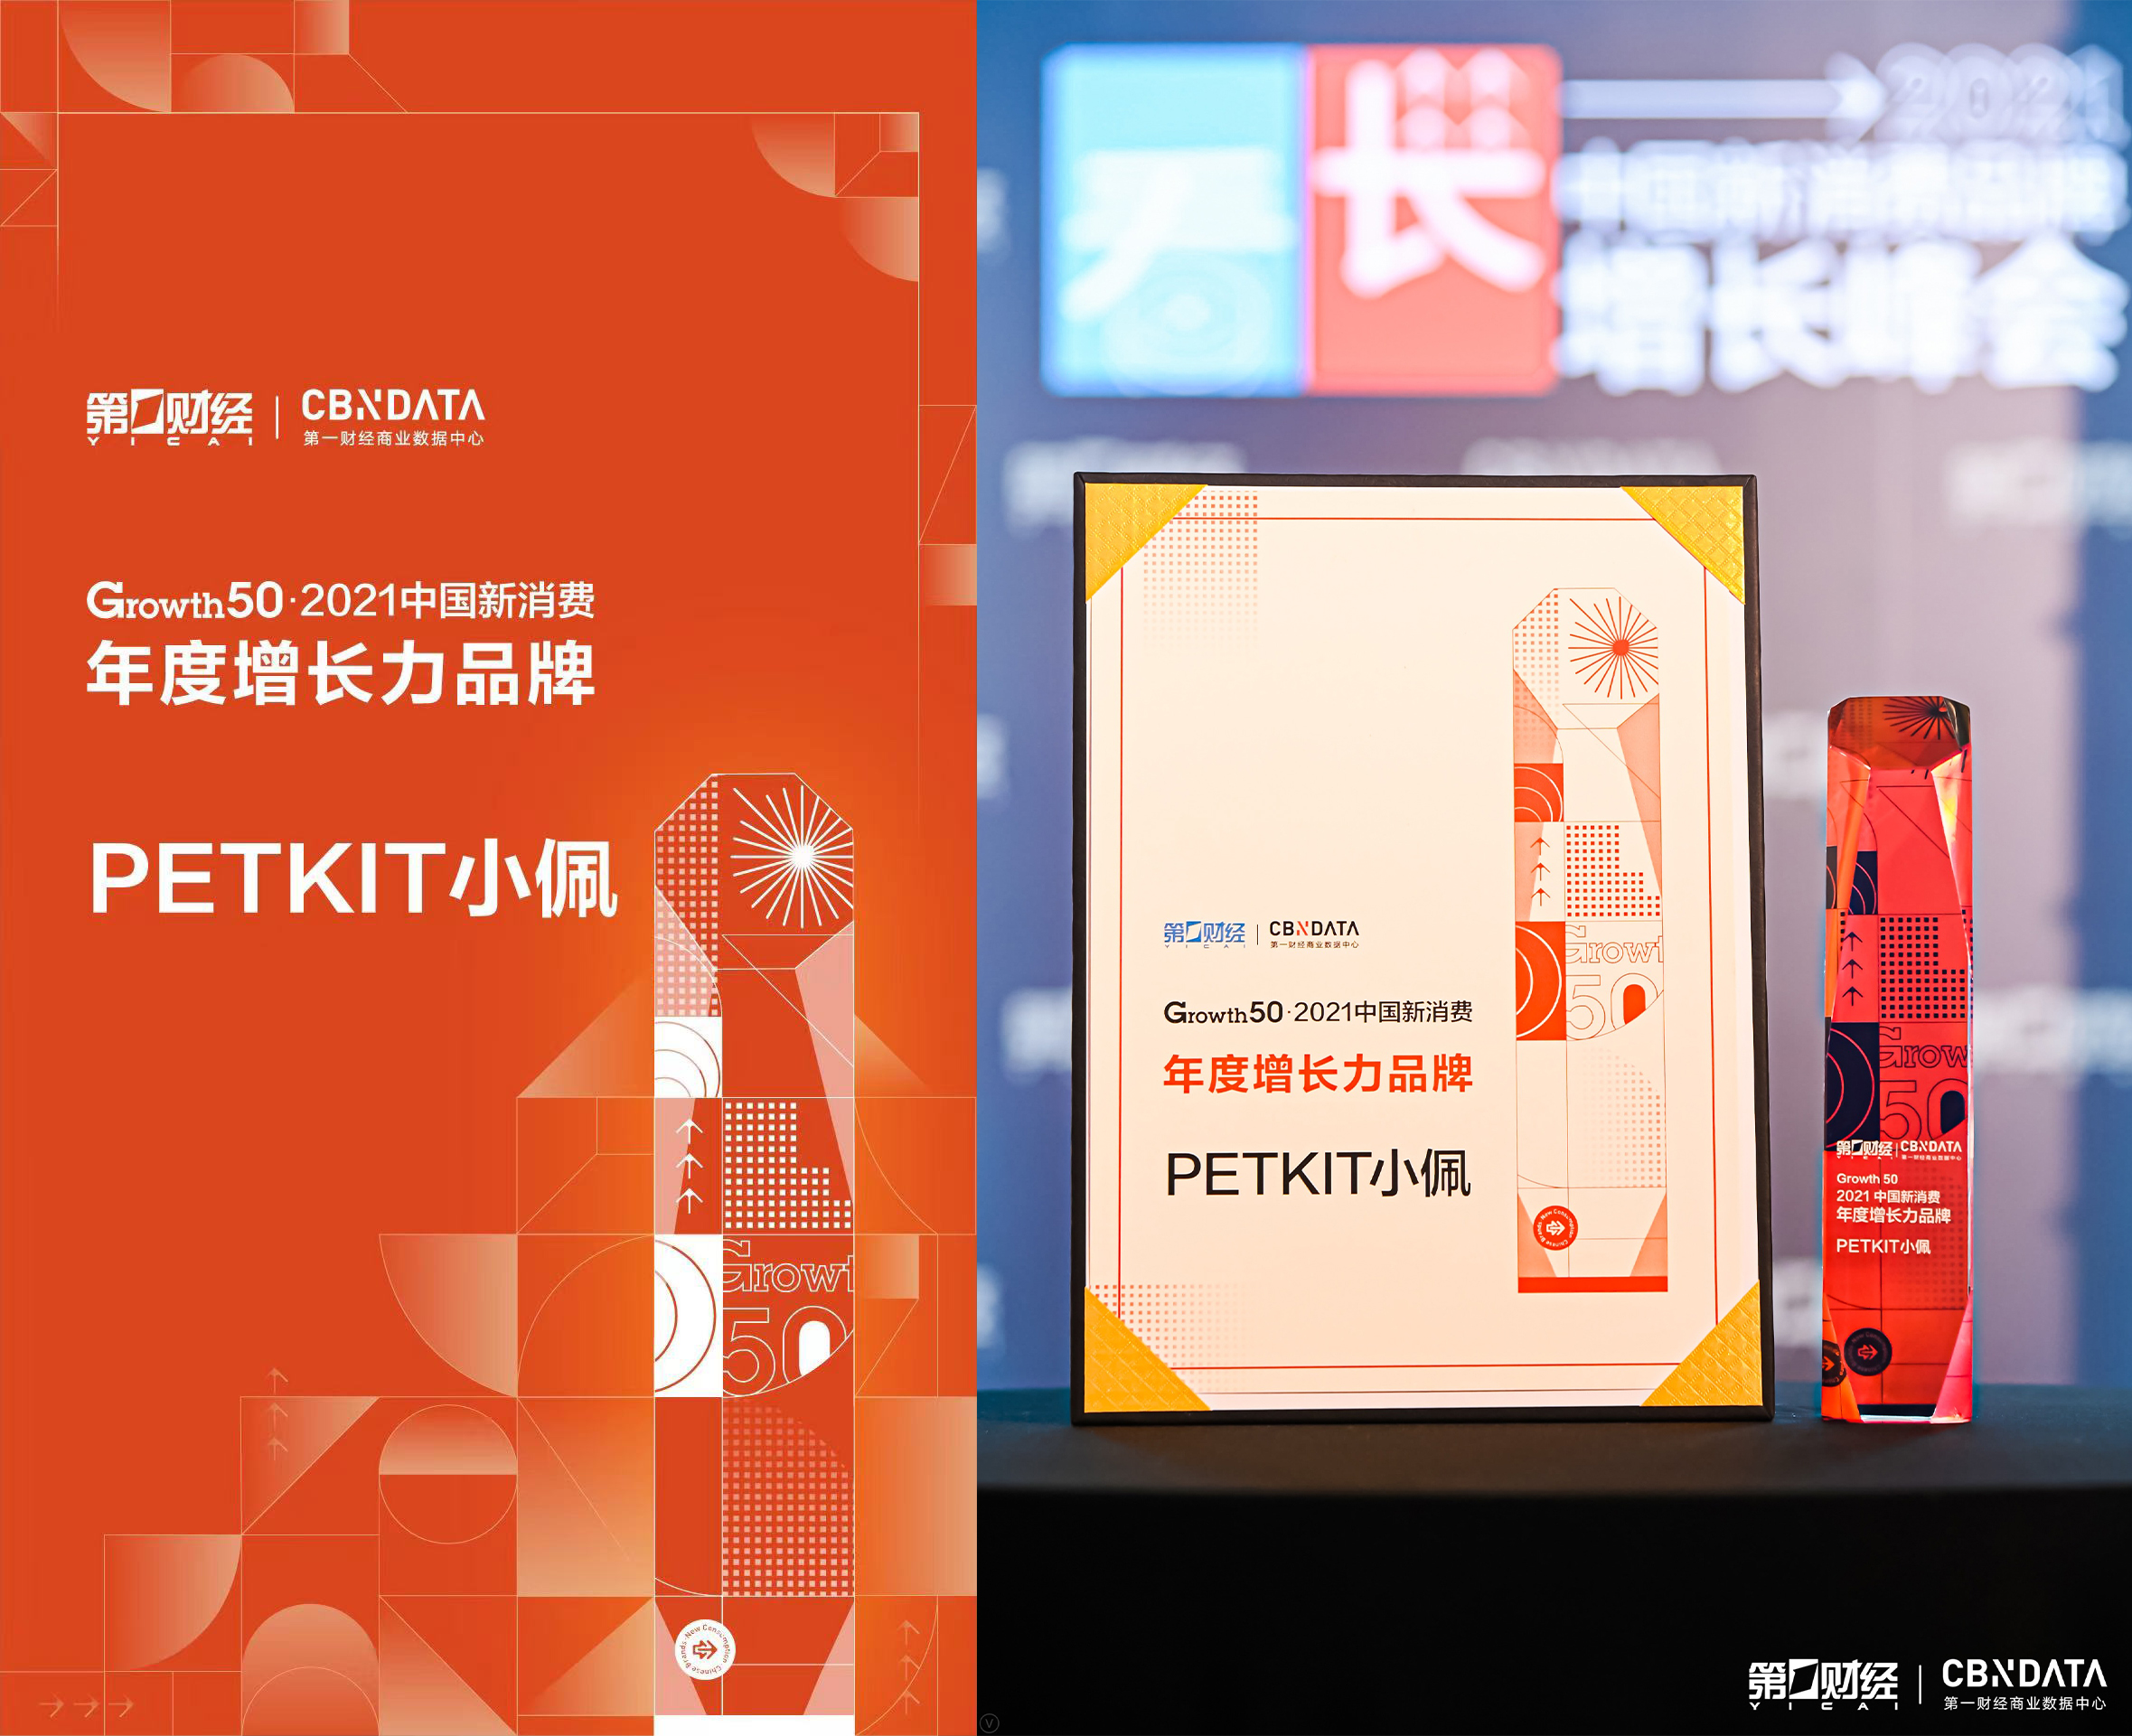 宠物赛道黑马PETKIT小佩，荣获2021中国新消费年度增长力品牌